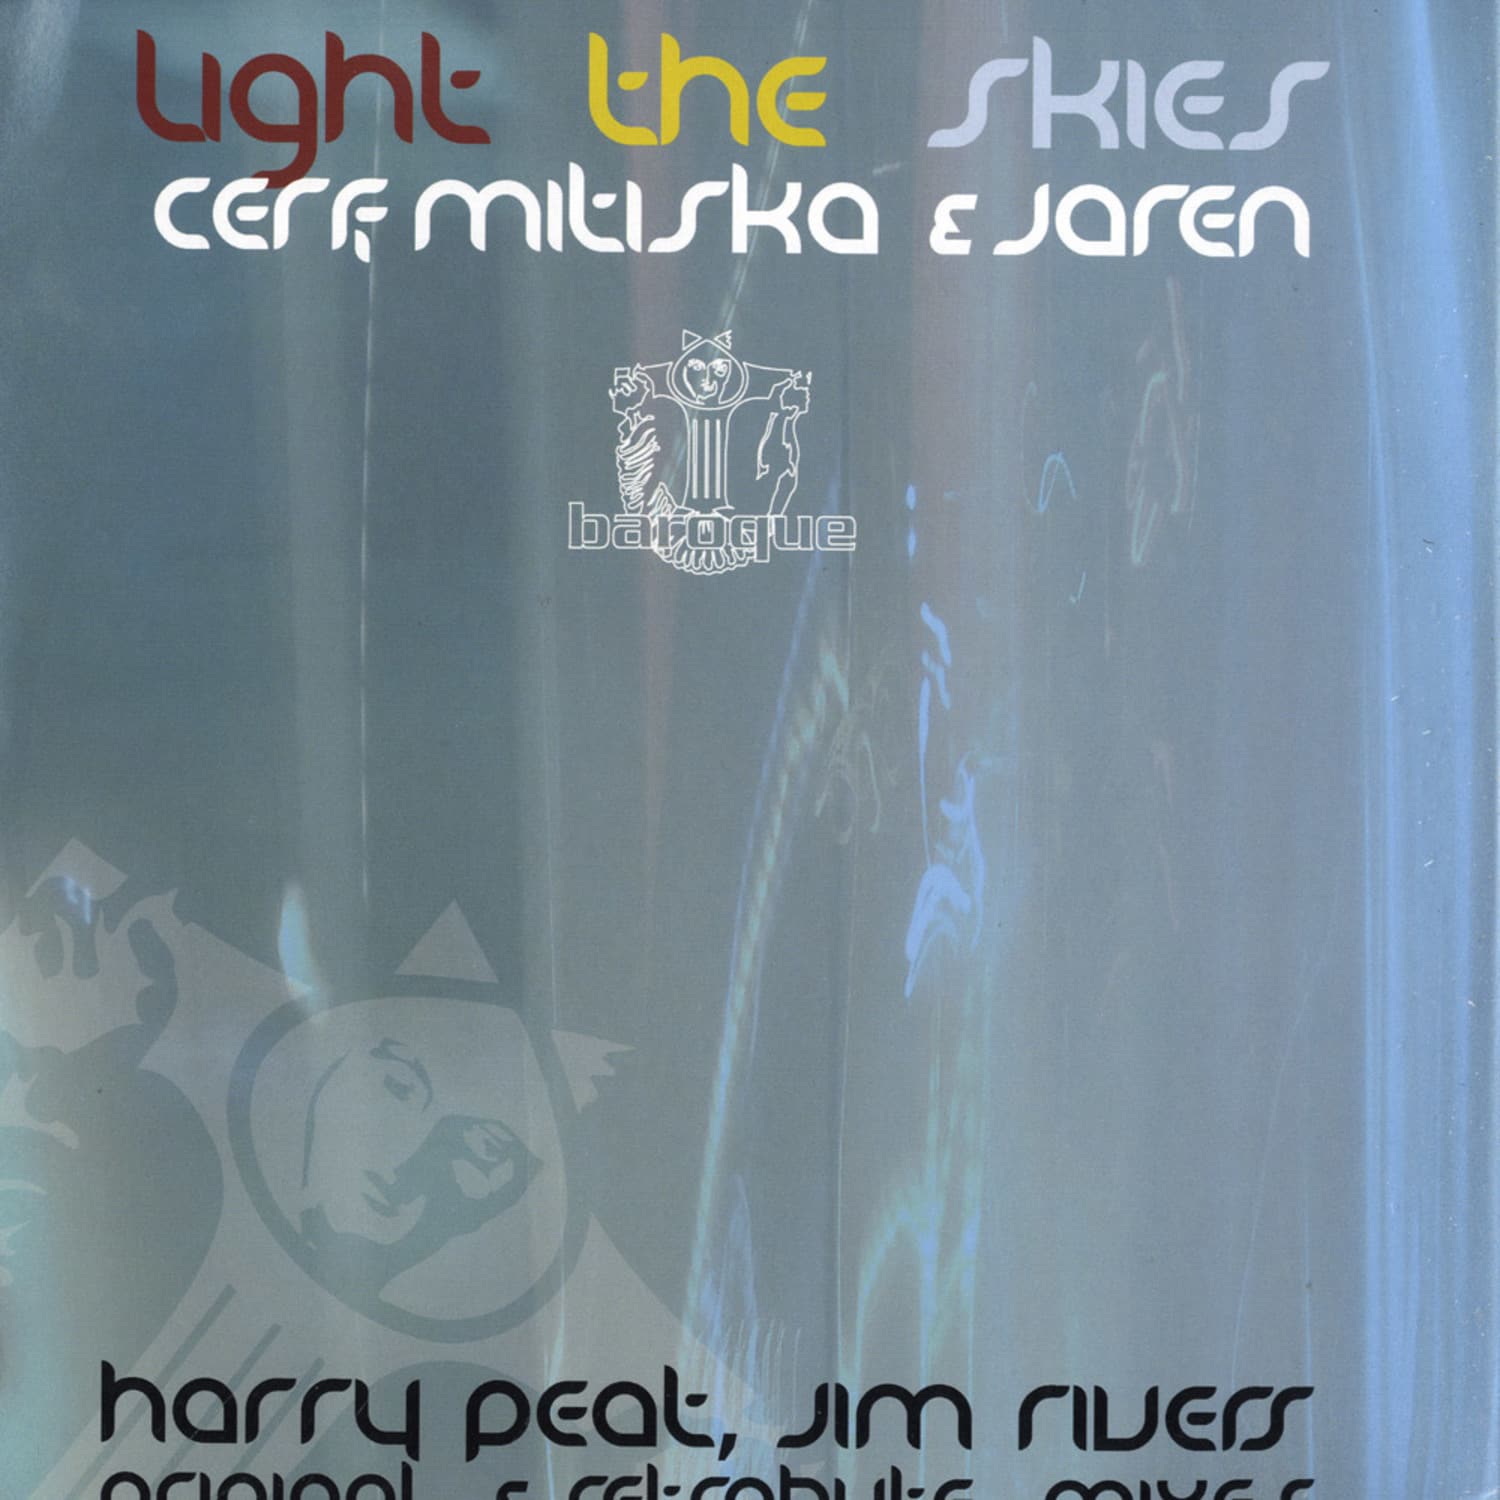 Mitiska, Cerf & Jaren - LIGHT THE SKIES 